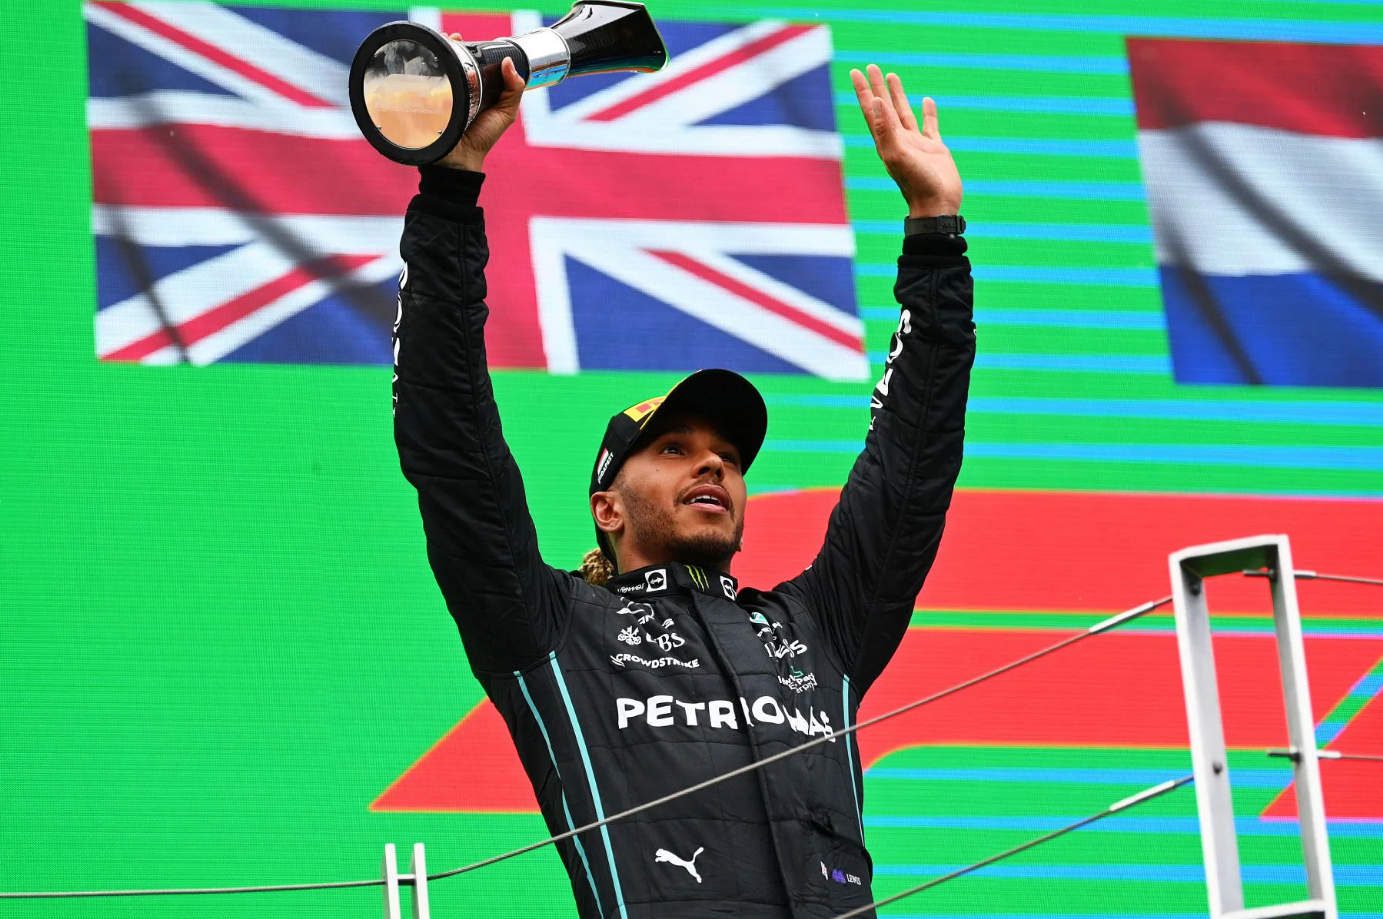 Lewis Hamilton megdöntötte az Indy 500 legenda 67 éves rekordját